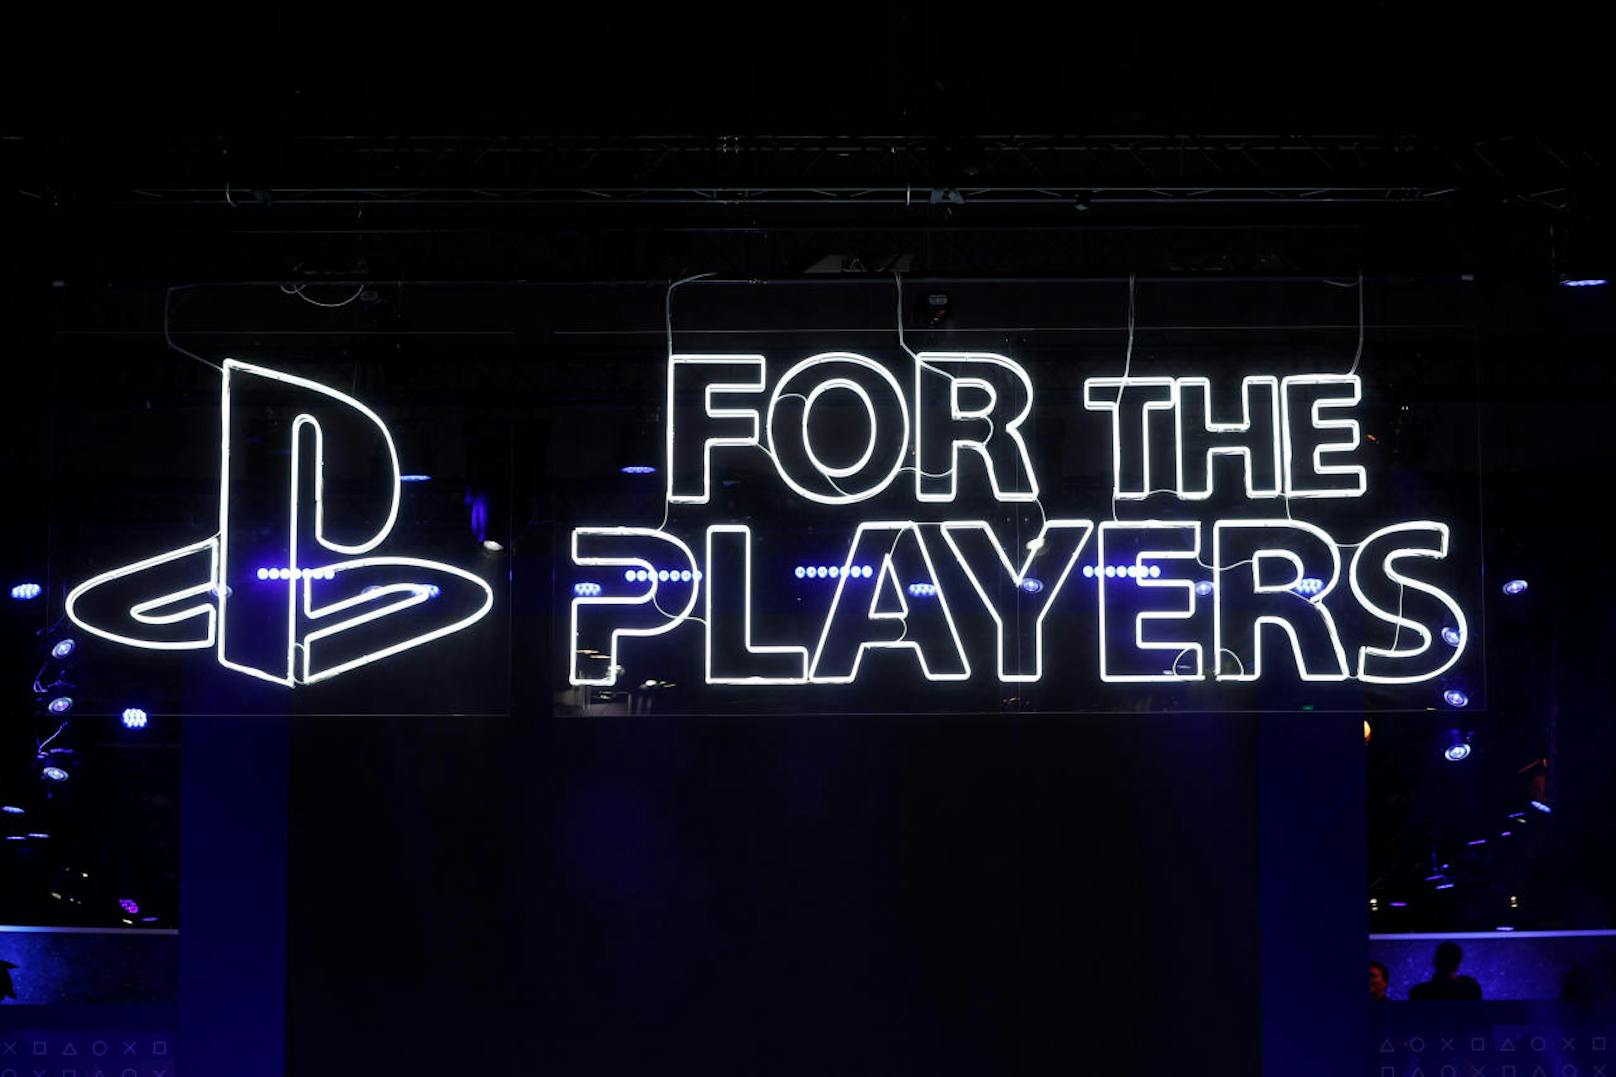 <b>16. November 2018:</b> Die E3 gilt als die weltweit bedeutendste und besucherstärkste Videospielmesse. Umso überraschender, dass Sony PlayStation angekündigt hat, 2019 den Auftritt dort erstmals seit 24 Jahren auszulassen. Grund: die Branche entwickle sich und man suche neue Wege, die Spieler zu begeistern. Doch, und das soll die Spieler freuen, könnte auch ein Grund sein, dass Sony bei einem eigenen Event Mitte 2019 die PlayStation 5 vorstellen könnte. Beobachter sagten deshalb bereits vor der E3-Absage diesen Schritt von Sony voraus. Marktstart wäre dann 2020, der vermutete Preis liegt um 100 Euro höher als jener der PlayStation 4, nämlich bei 499 Euro.